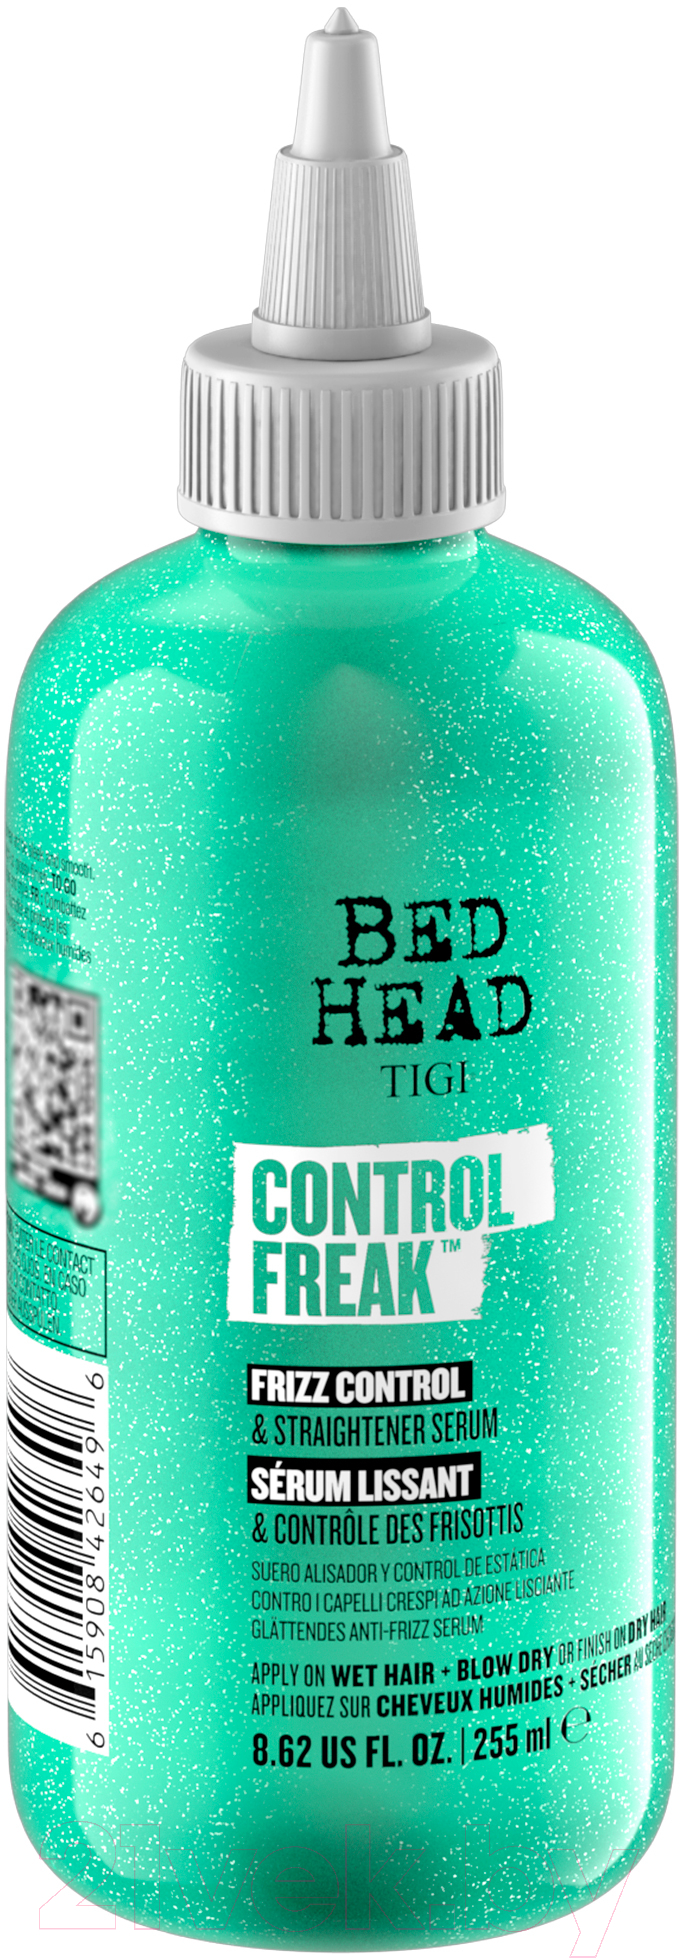 Сыворотка для волос Tigi Bed Head Control Freak Serum